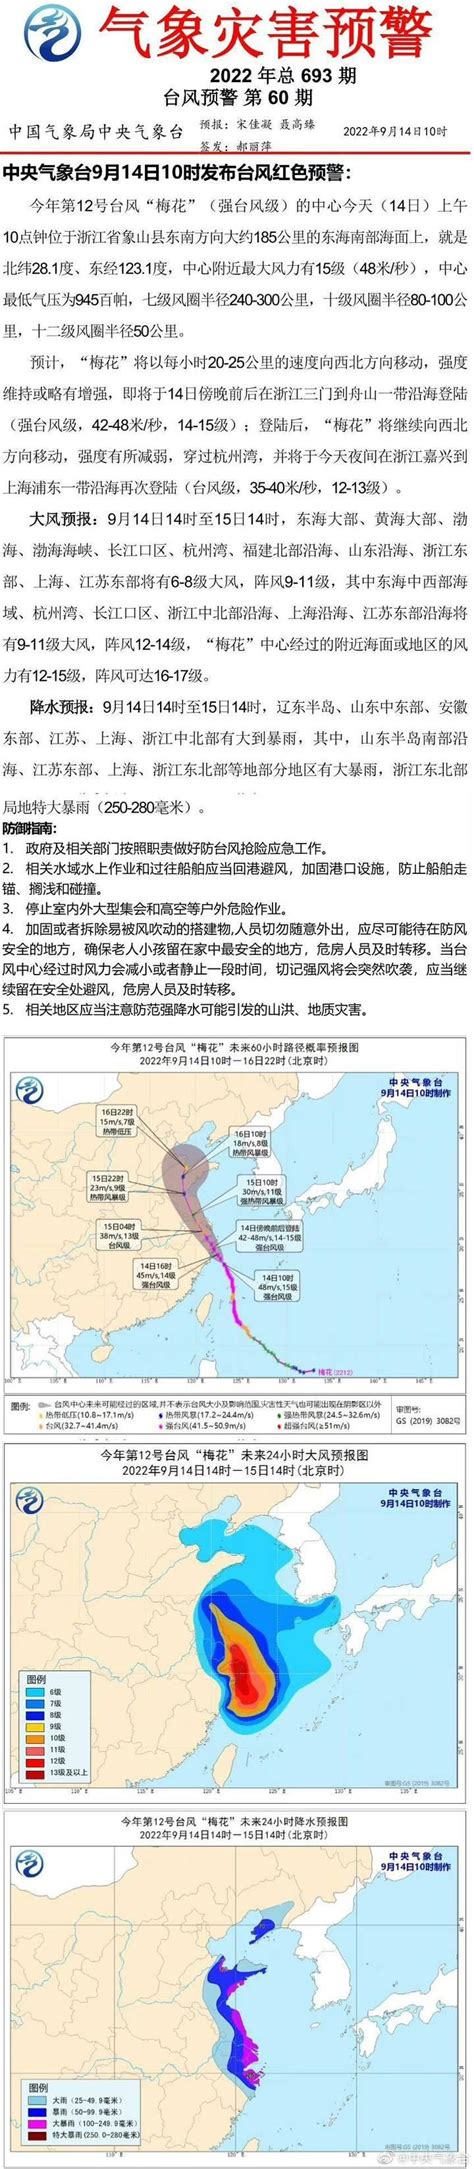 台风红色预警：“梅花”将于今日傍晚前后在浙江三门到舟山一带沿海登陆 - 21经济网